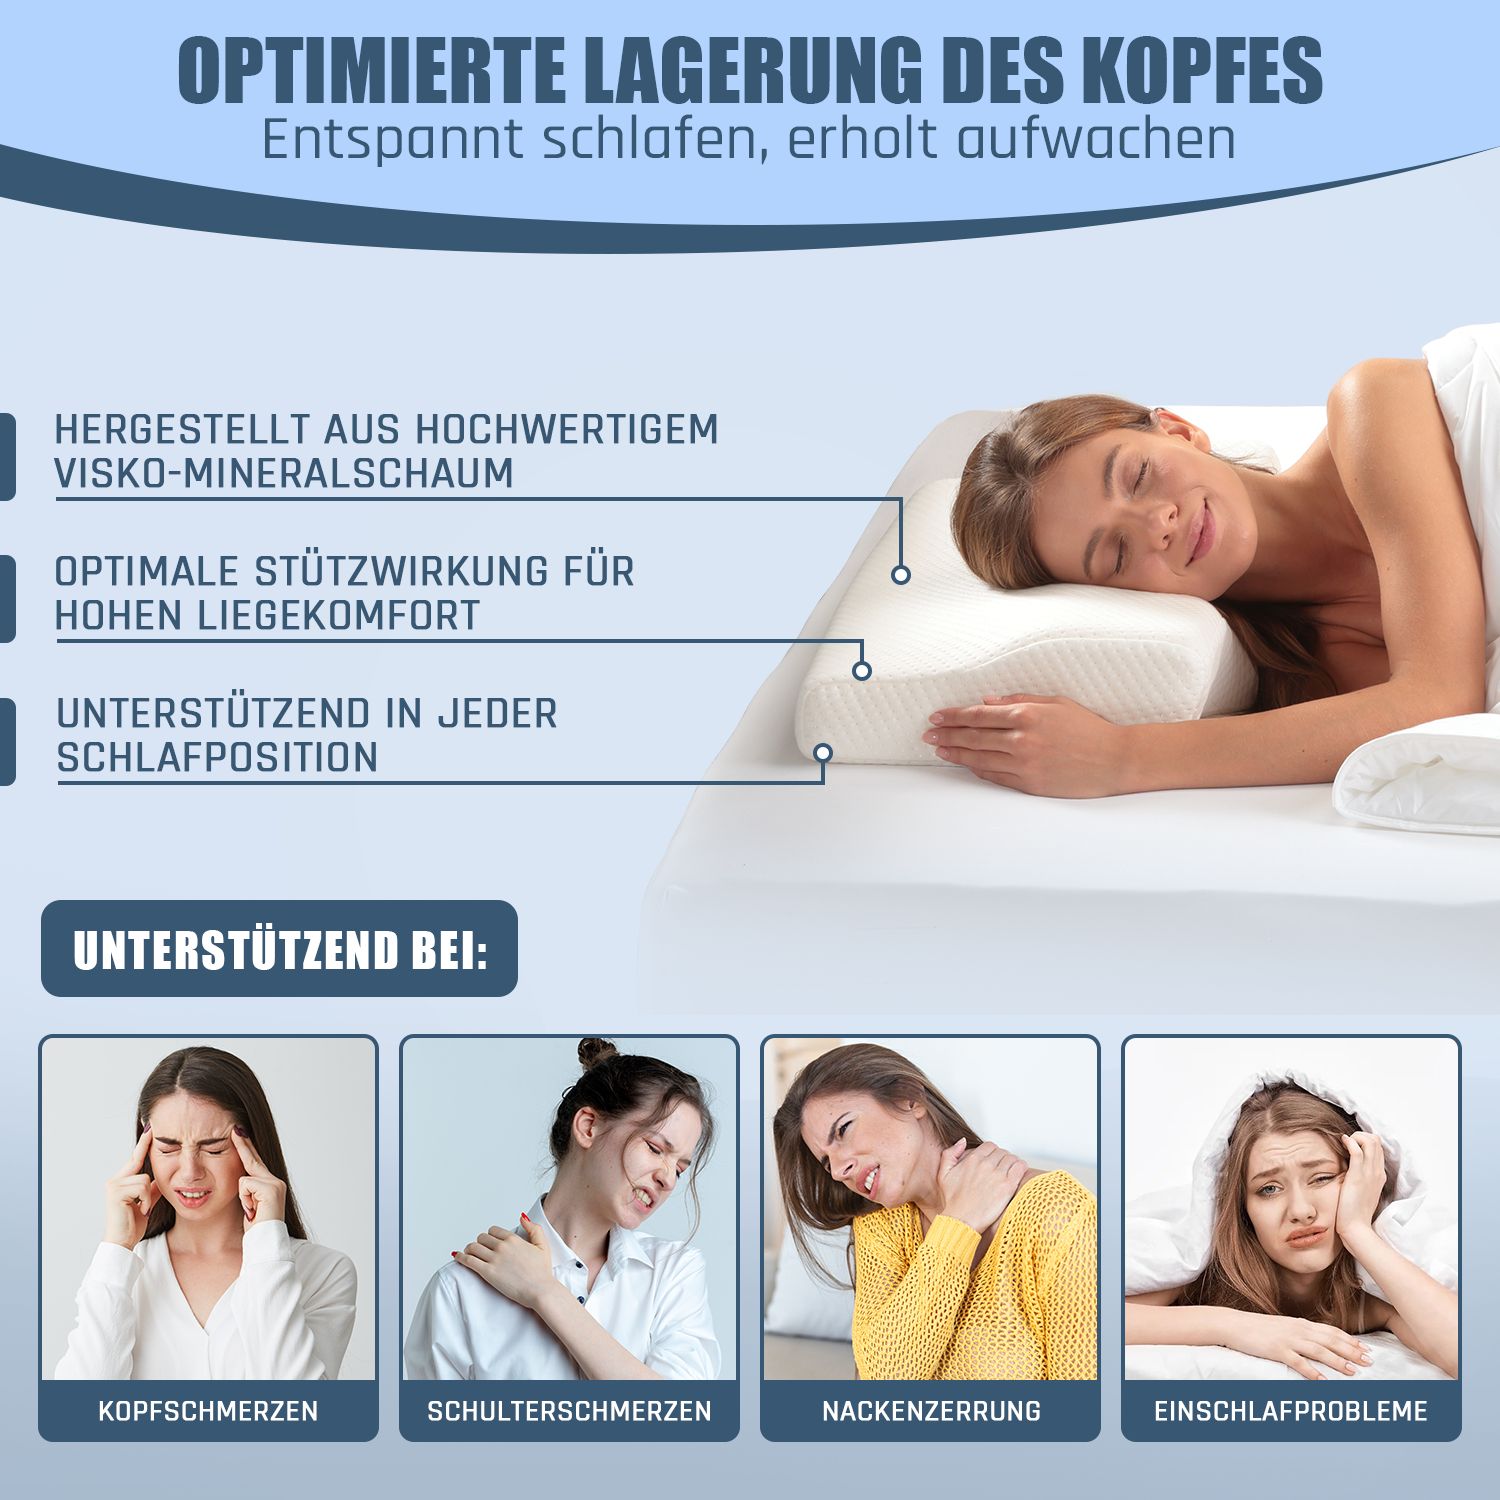 Bestschlaf Memory Foam Kissen Nackenkissen 60x35cm orthopädisches Kissen für optimale Unterstützung